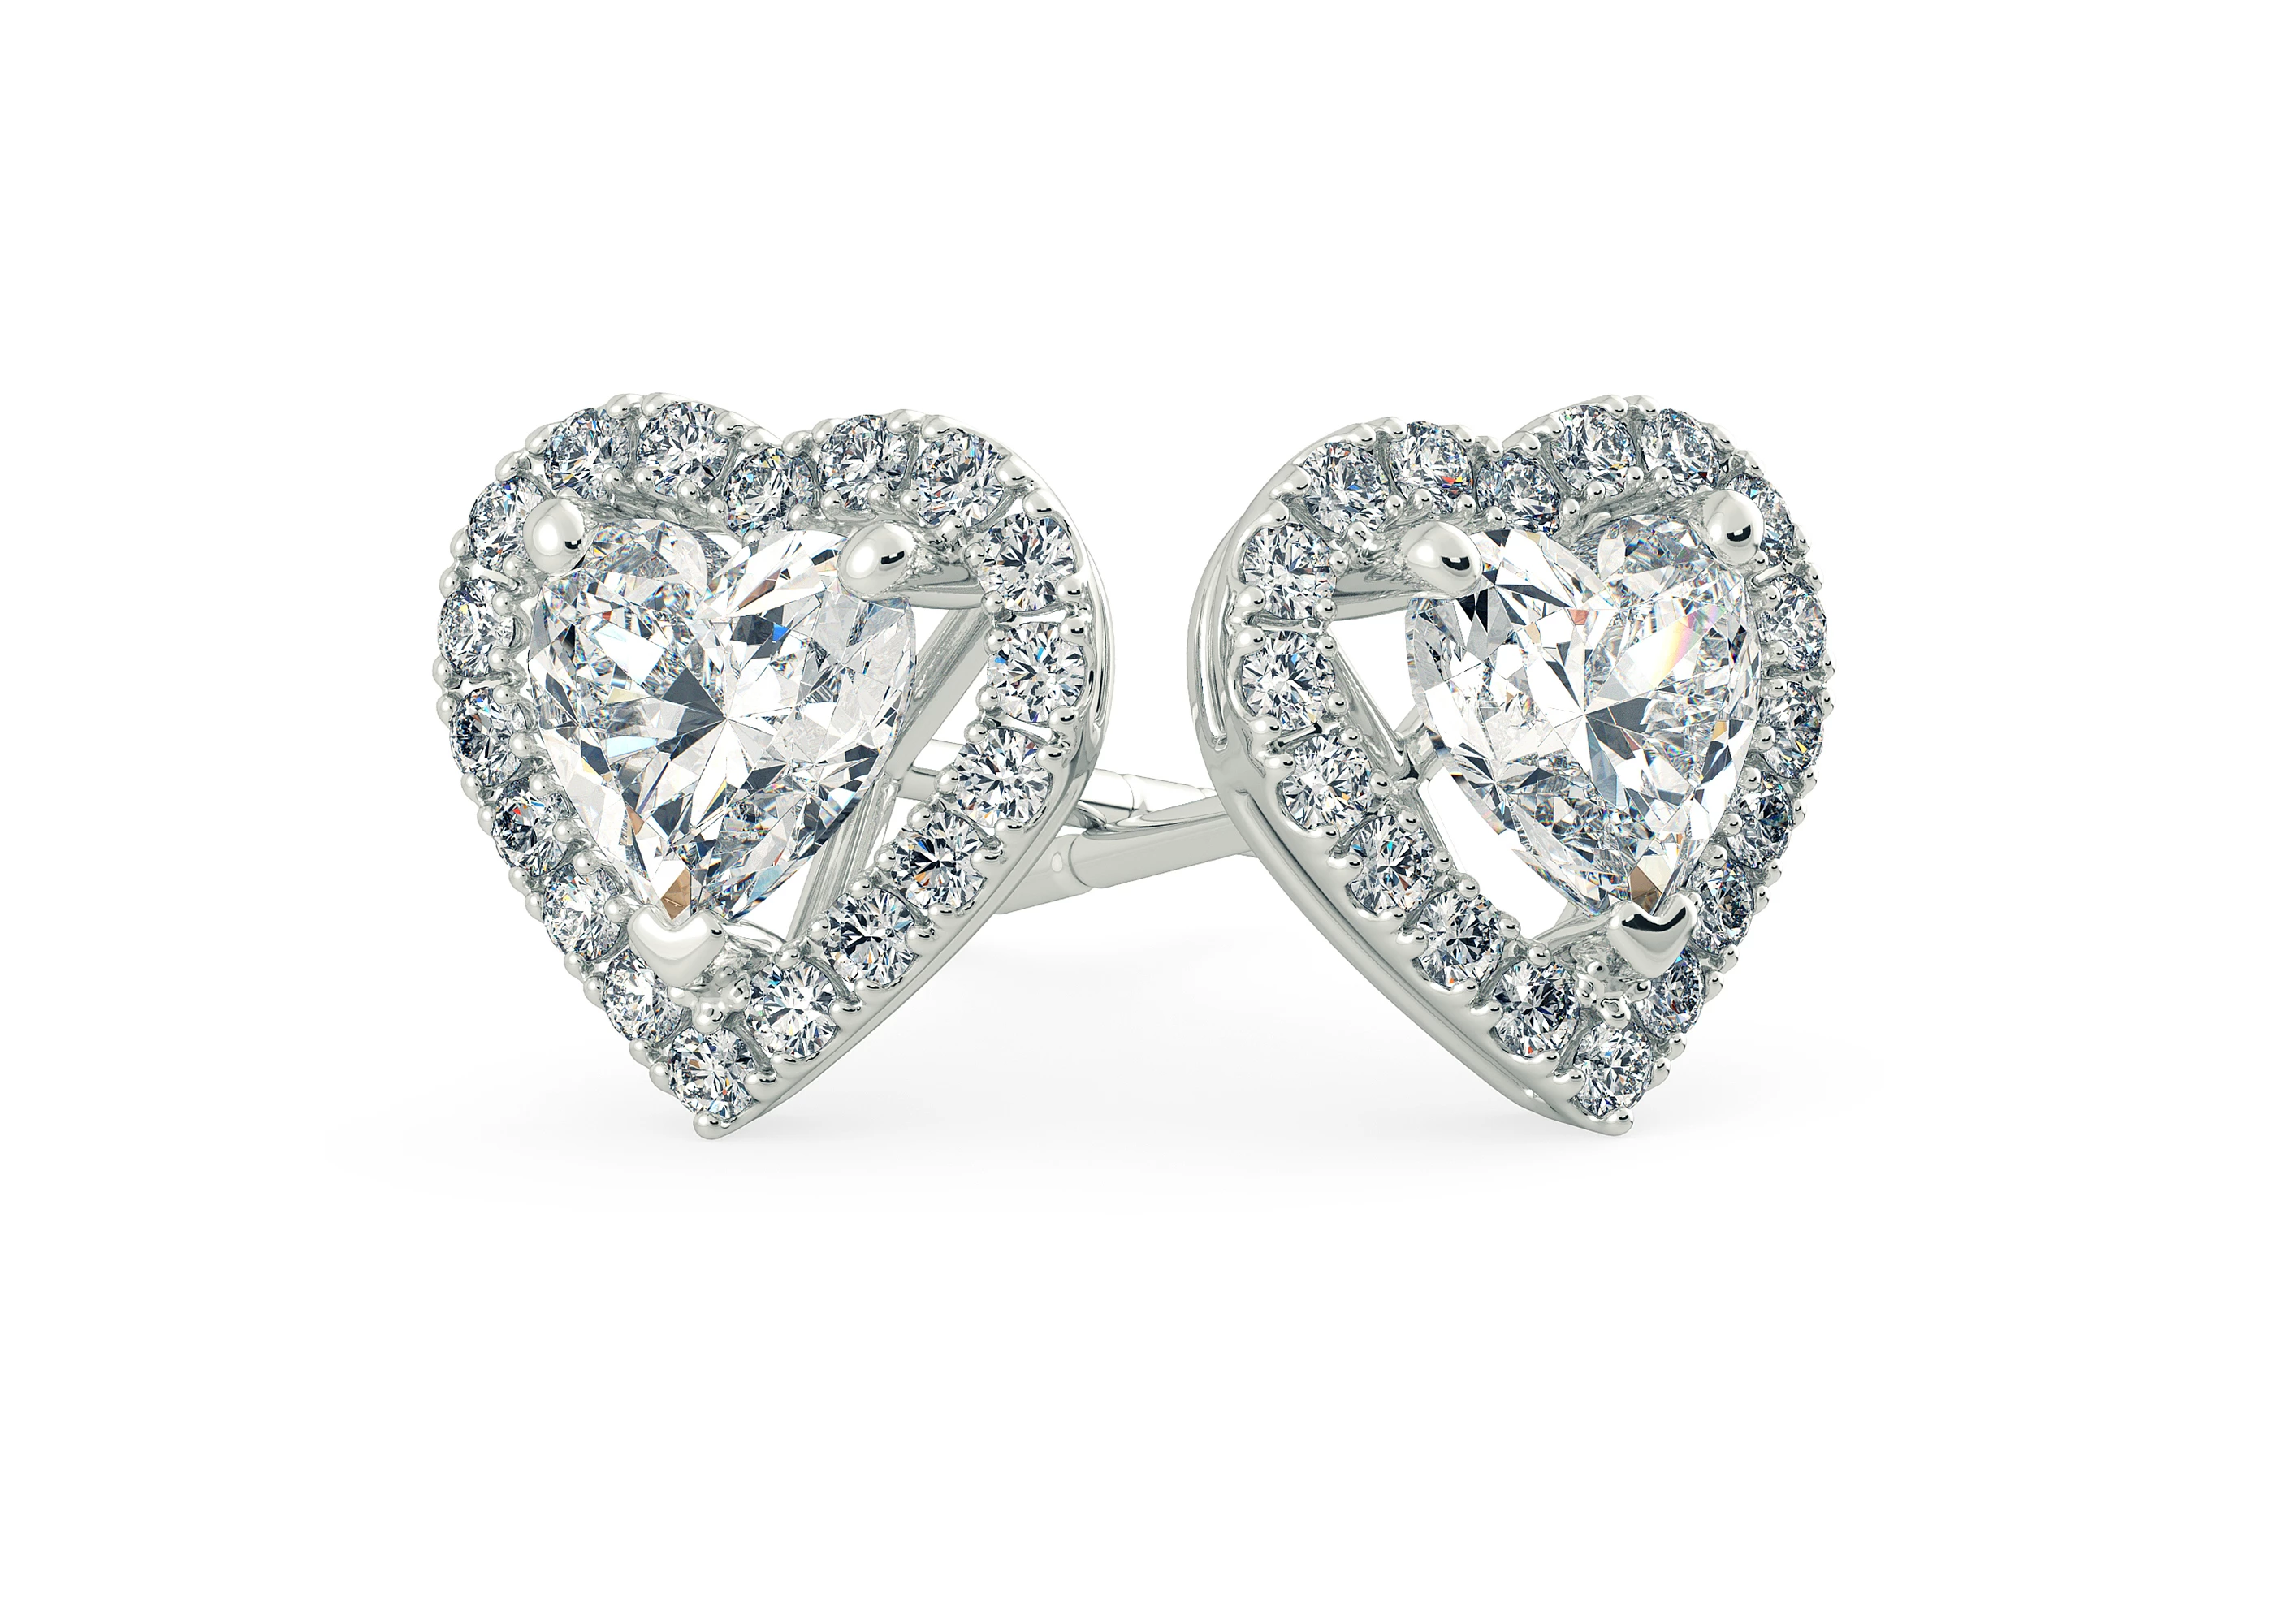 Bijou Heart Diamond Stud Earrings in 18K White Gold with Butterfly Backs